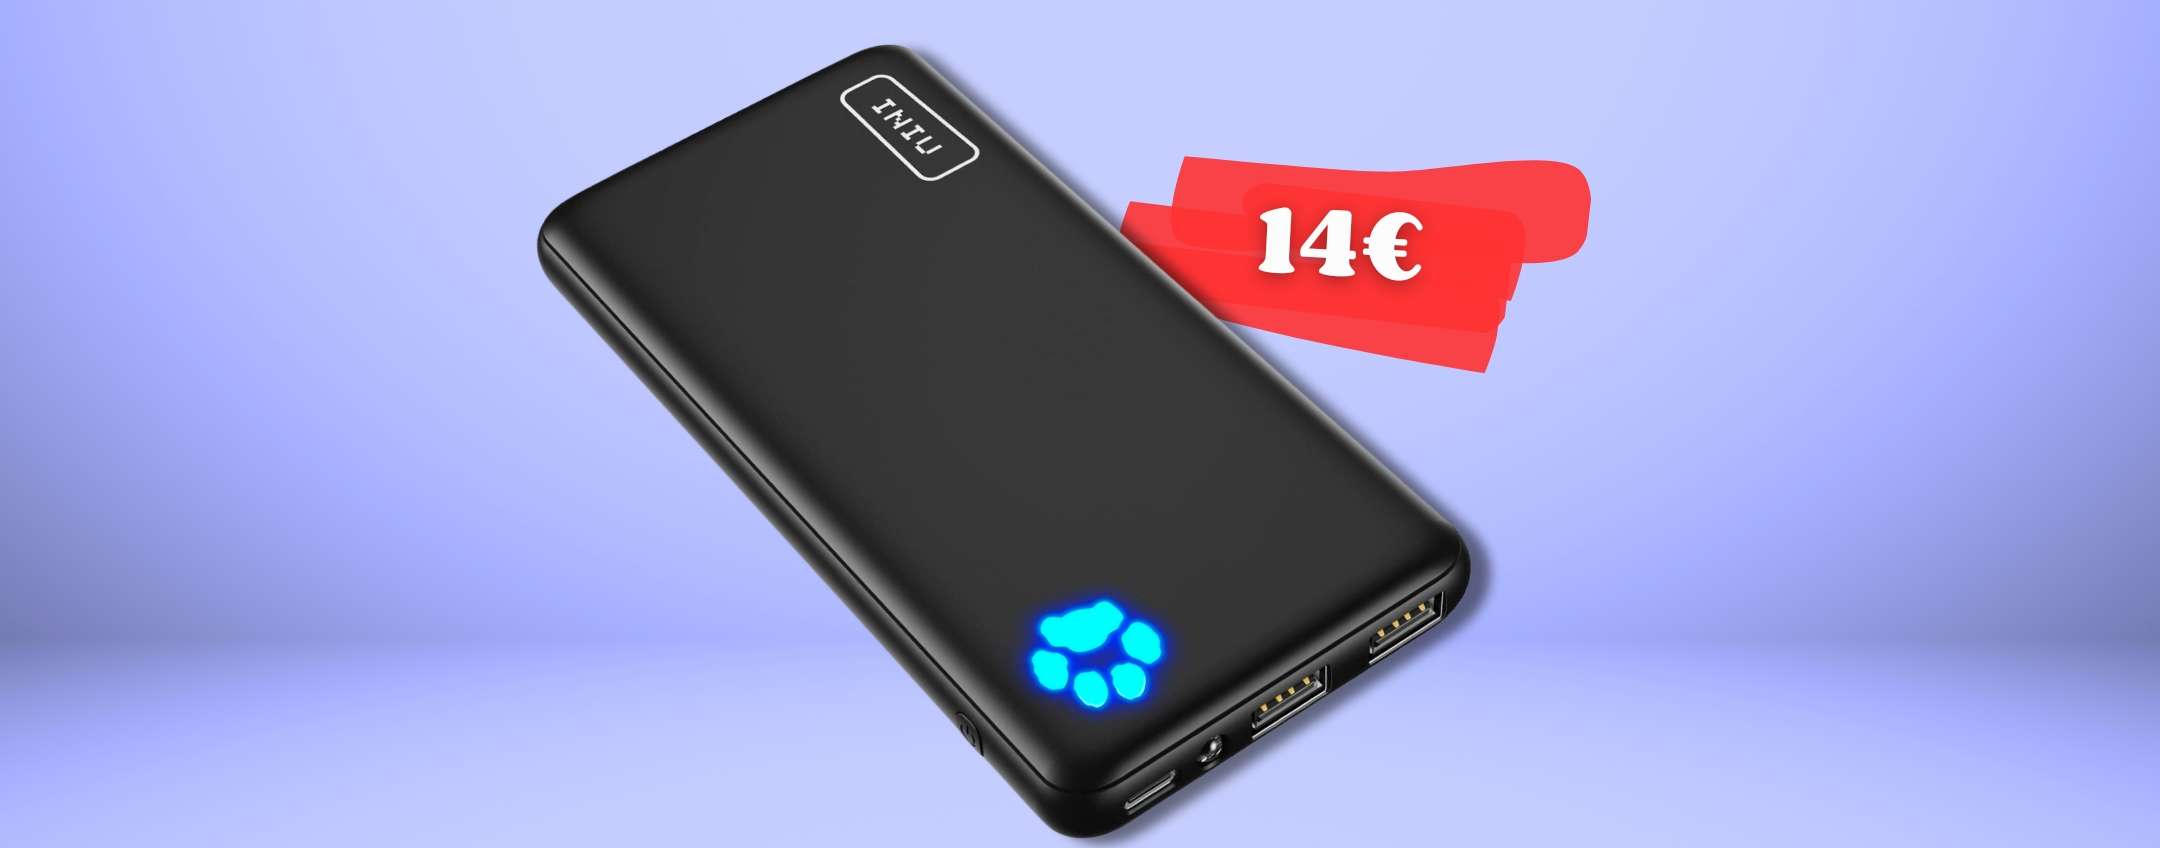 2 ricariche EXTRA sul tuo smartphone con power bank INIU (14€)